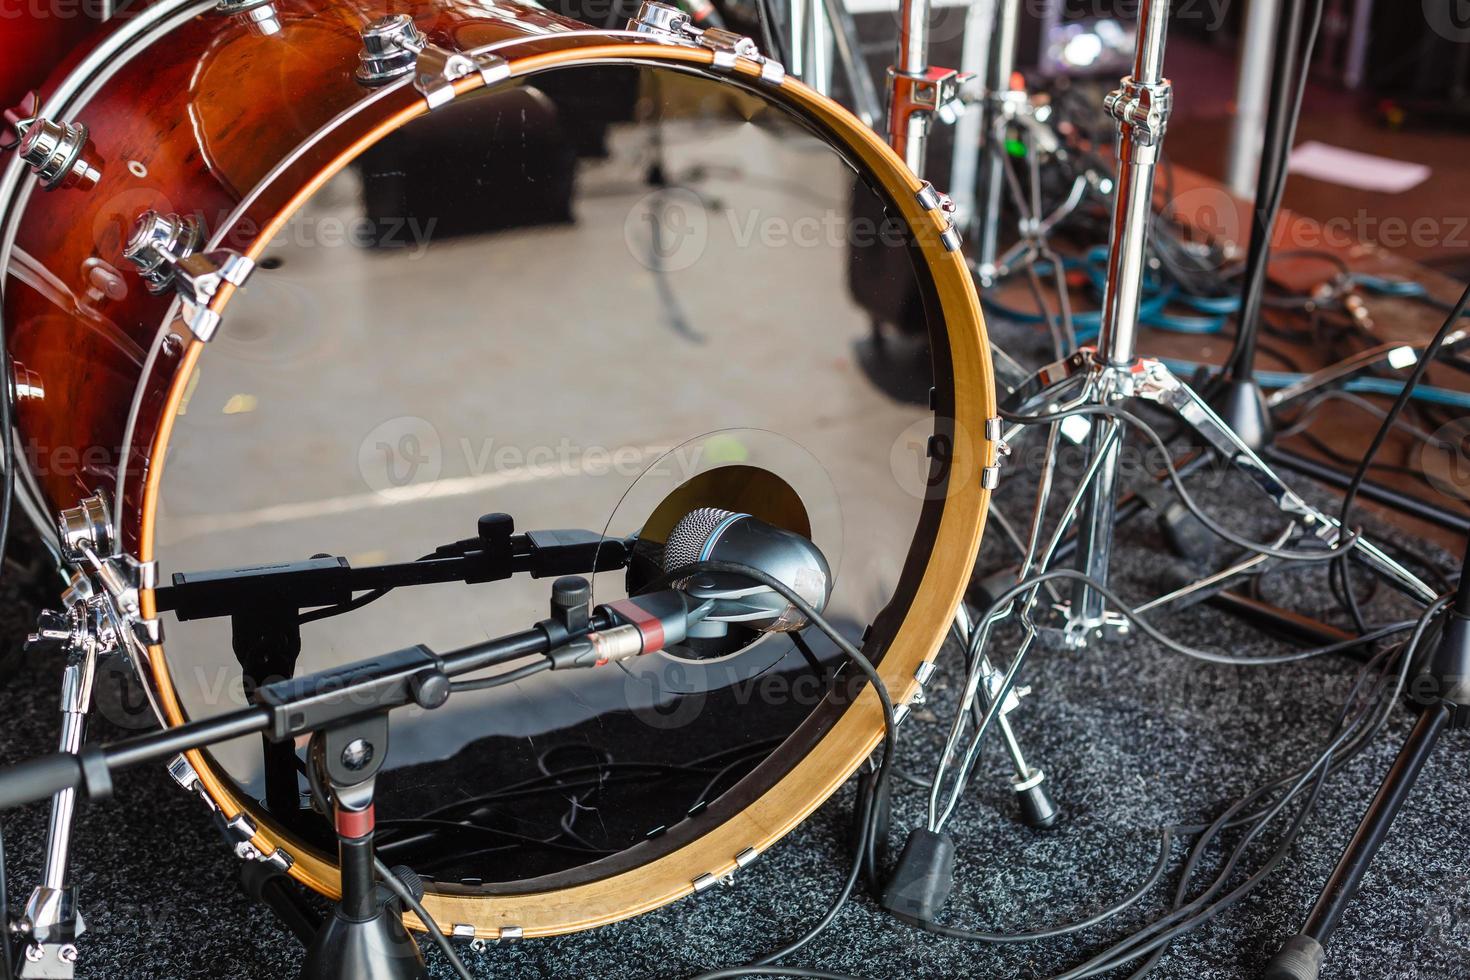 drums-set met stokjes Aan snaredrums foto